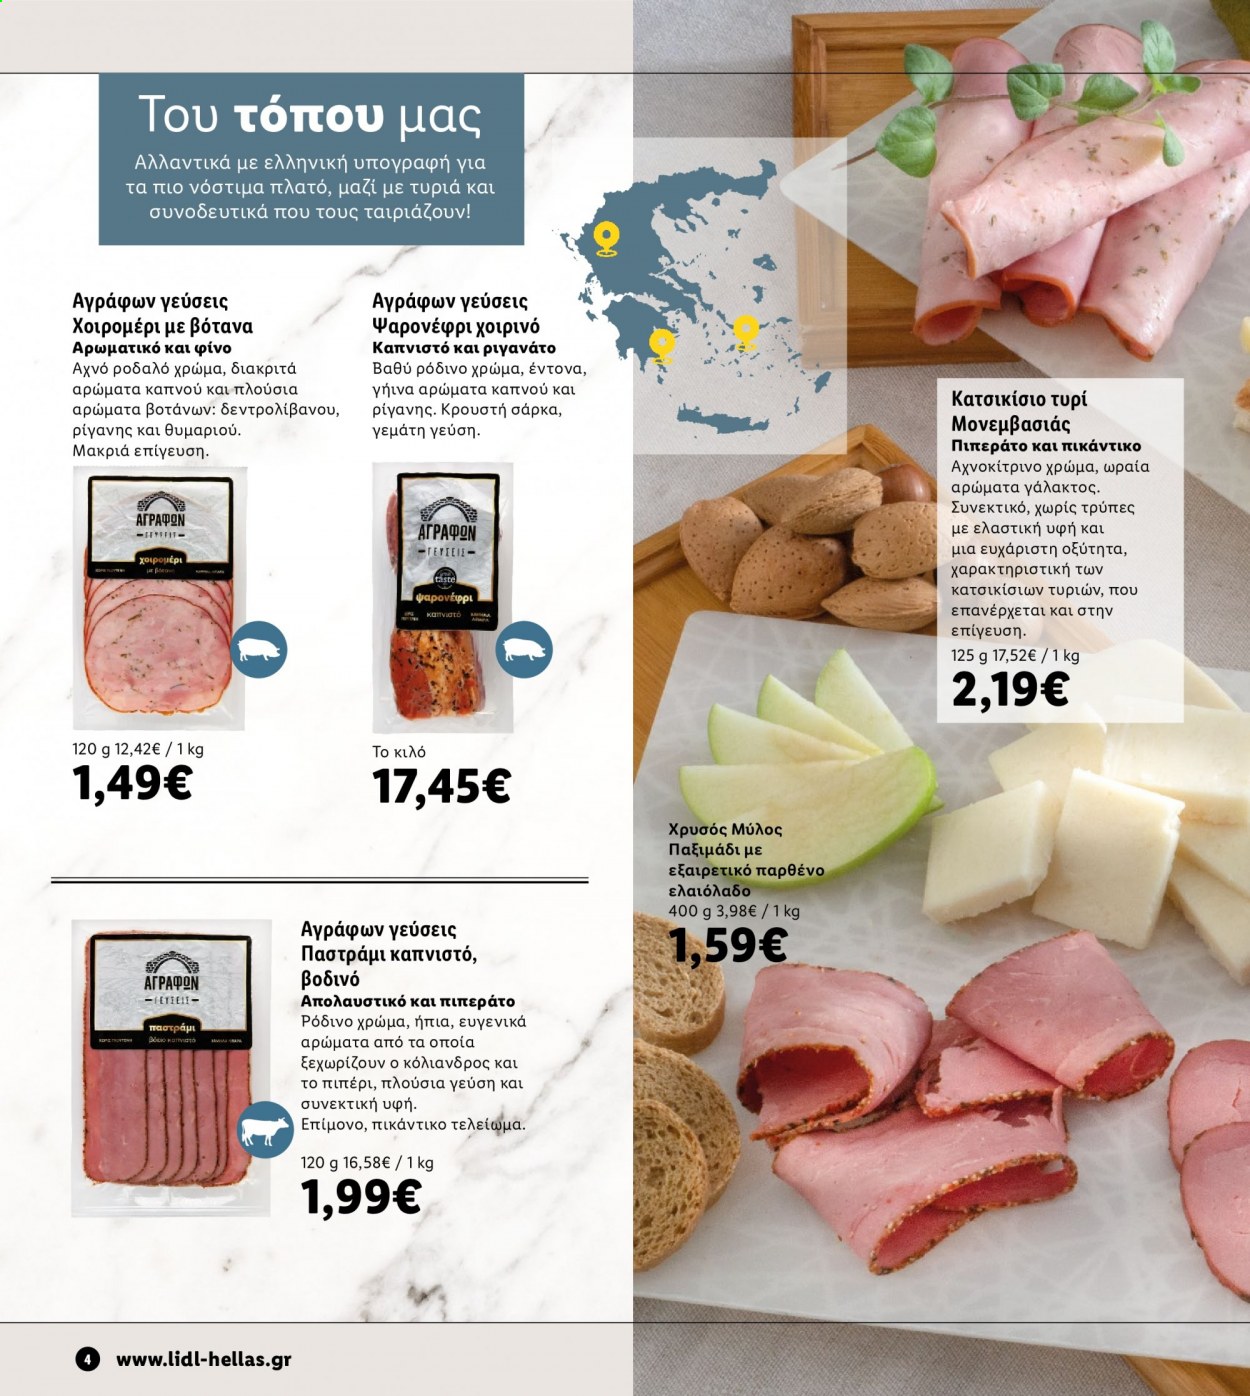 thumbnail - Φυλλάδια Lidl - Εκπτωτικά προϊόντα - κατσικίσιο τυρί, ελαιόλαδο. Σελίδα 4.